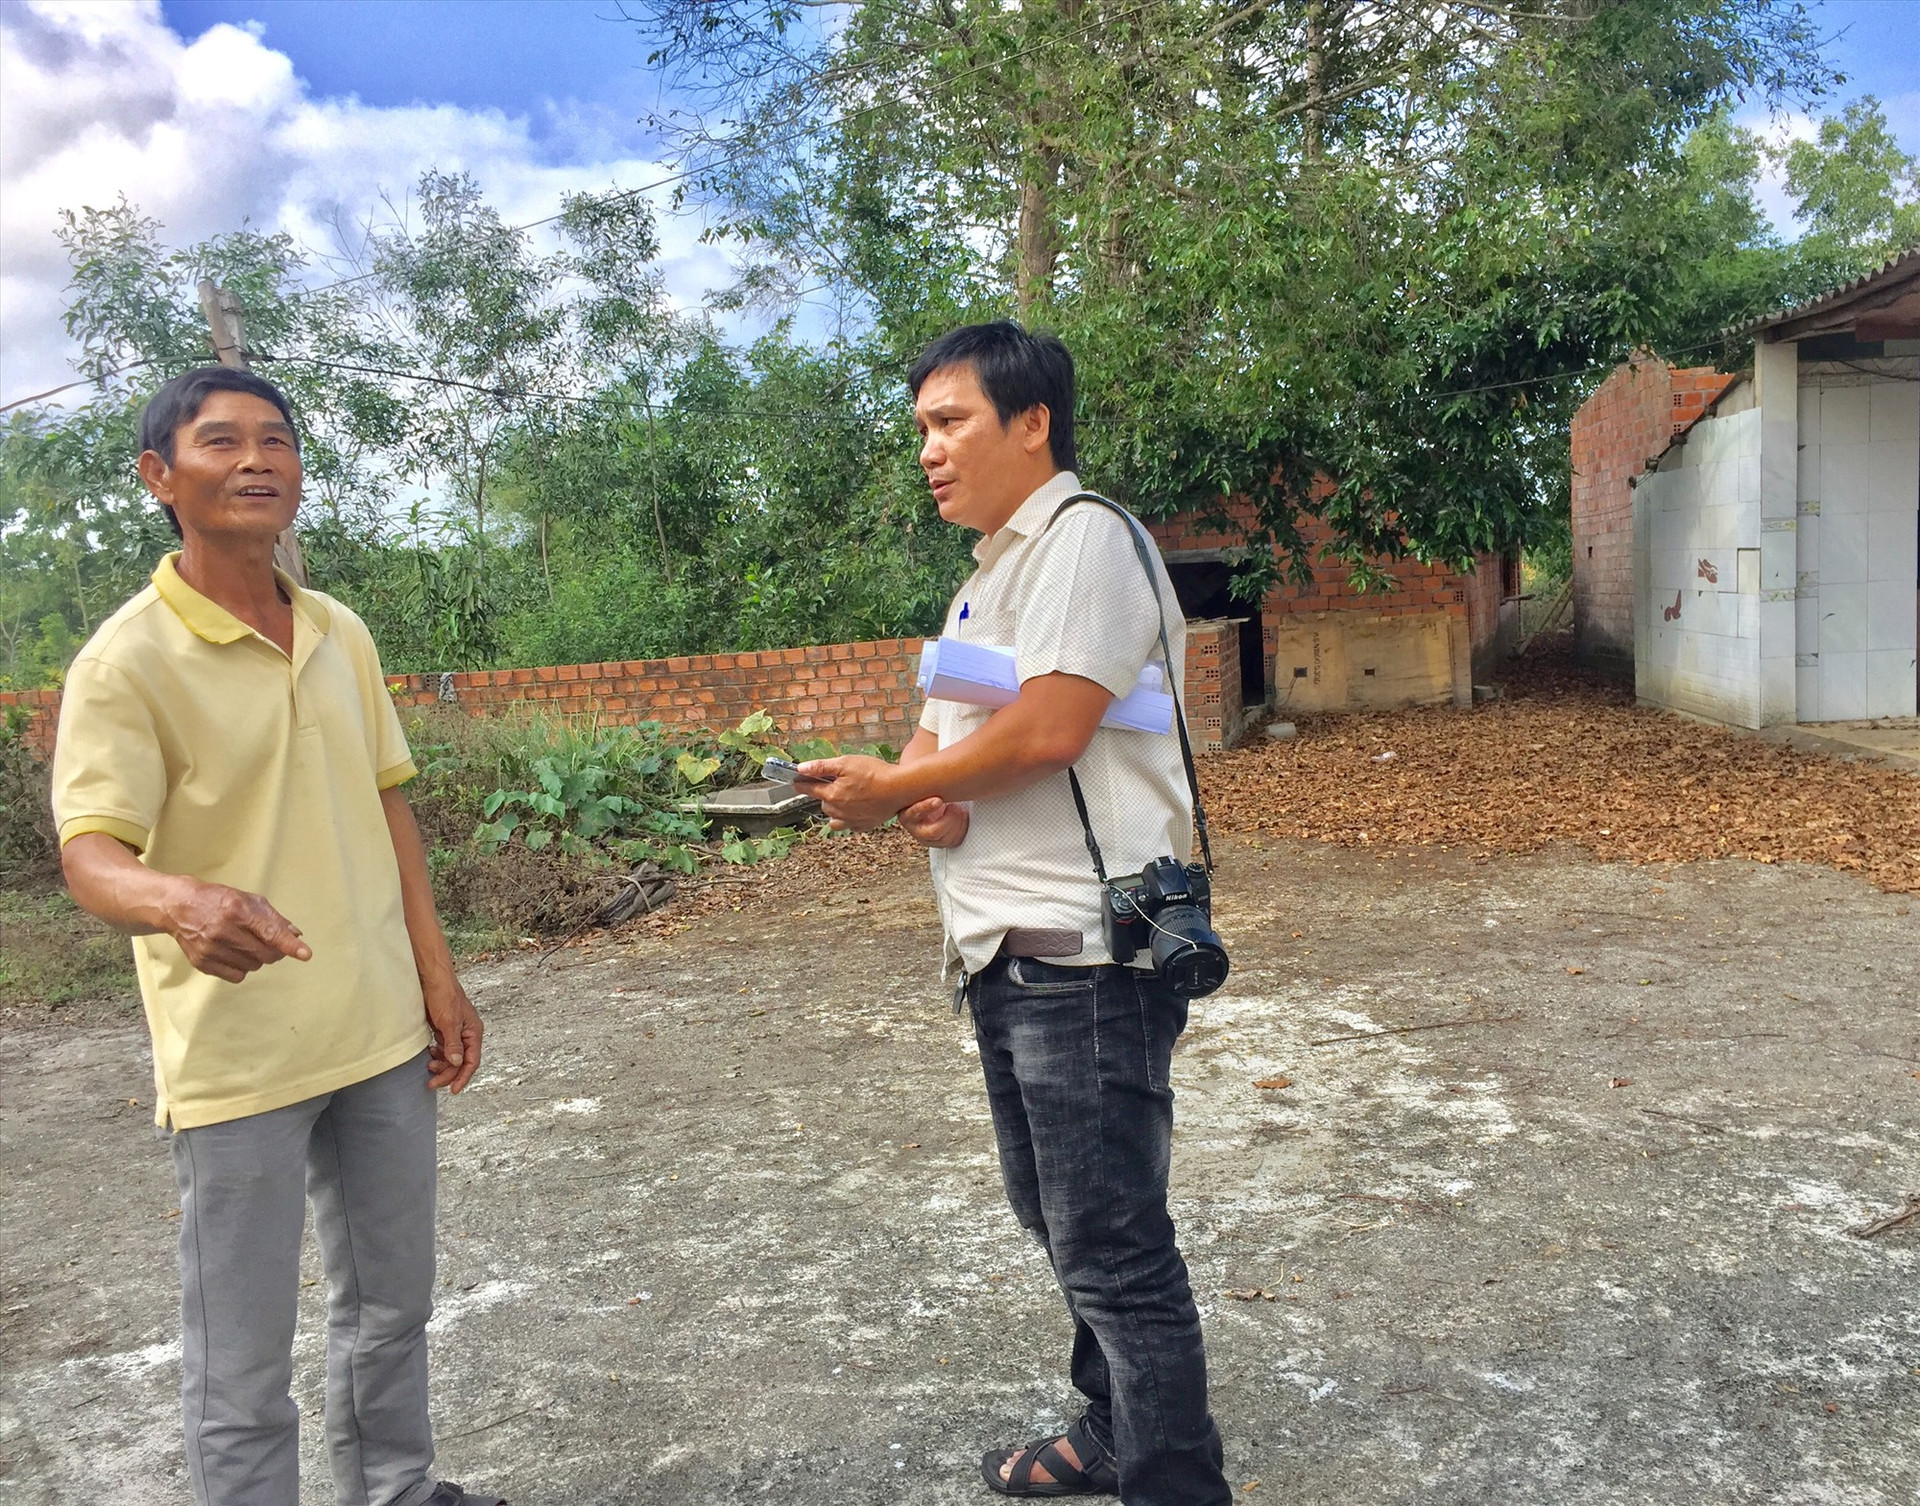 Ông Võ Thanh Đà (thôn Xuân Ngọc, xã Tam Anh Nam) trao đổi với phóng viên về hiện trạng khu đất bị ảnh hưởng bởi dự án (ảnh chụp cuối tháng 4.2021). Ảnh: T.M